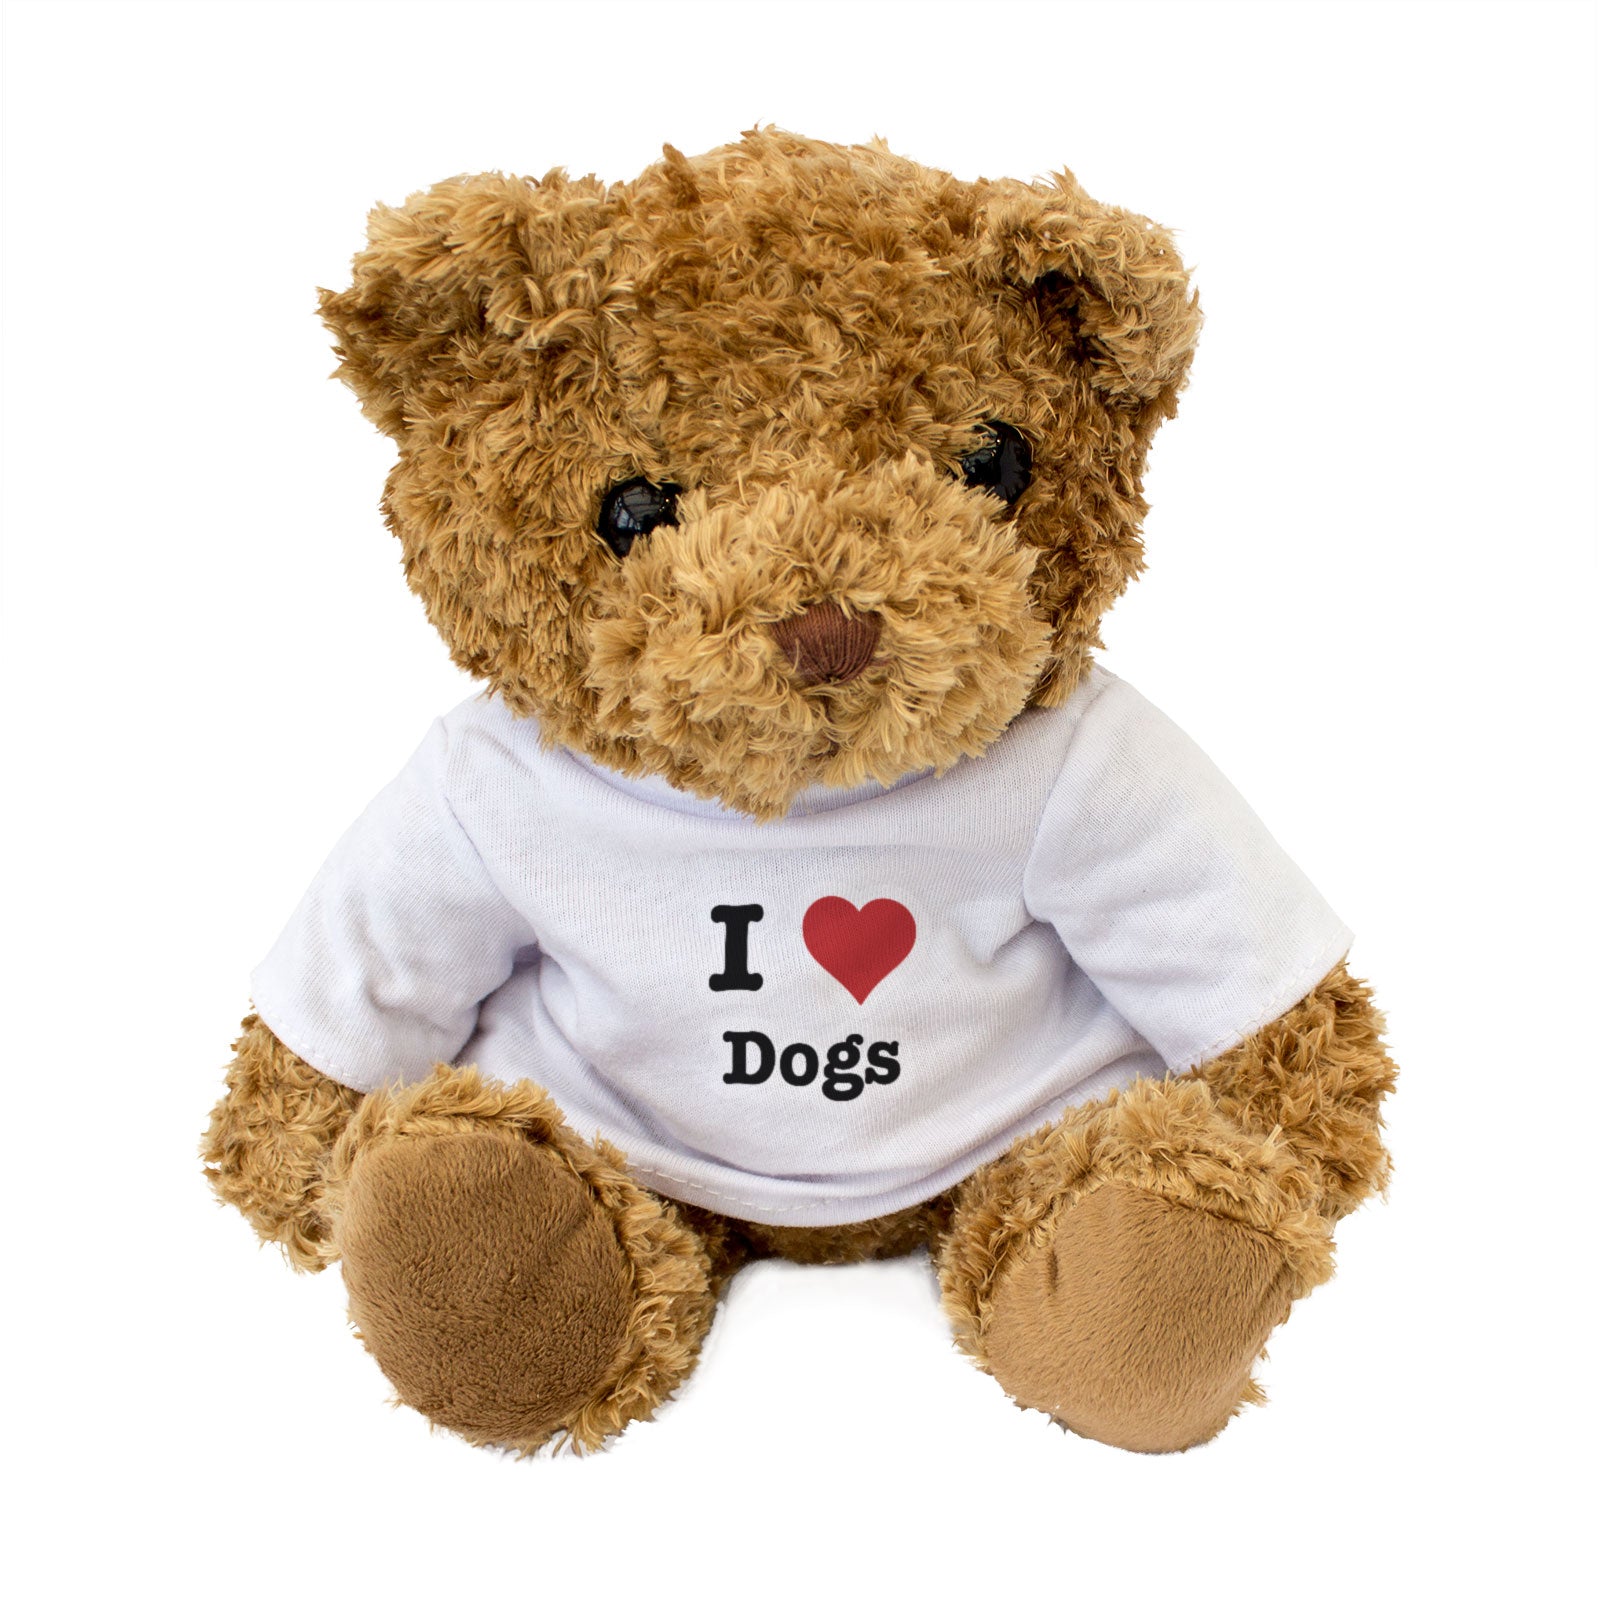 I Love Dogs - Teddy Bear